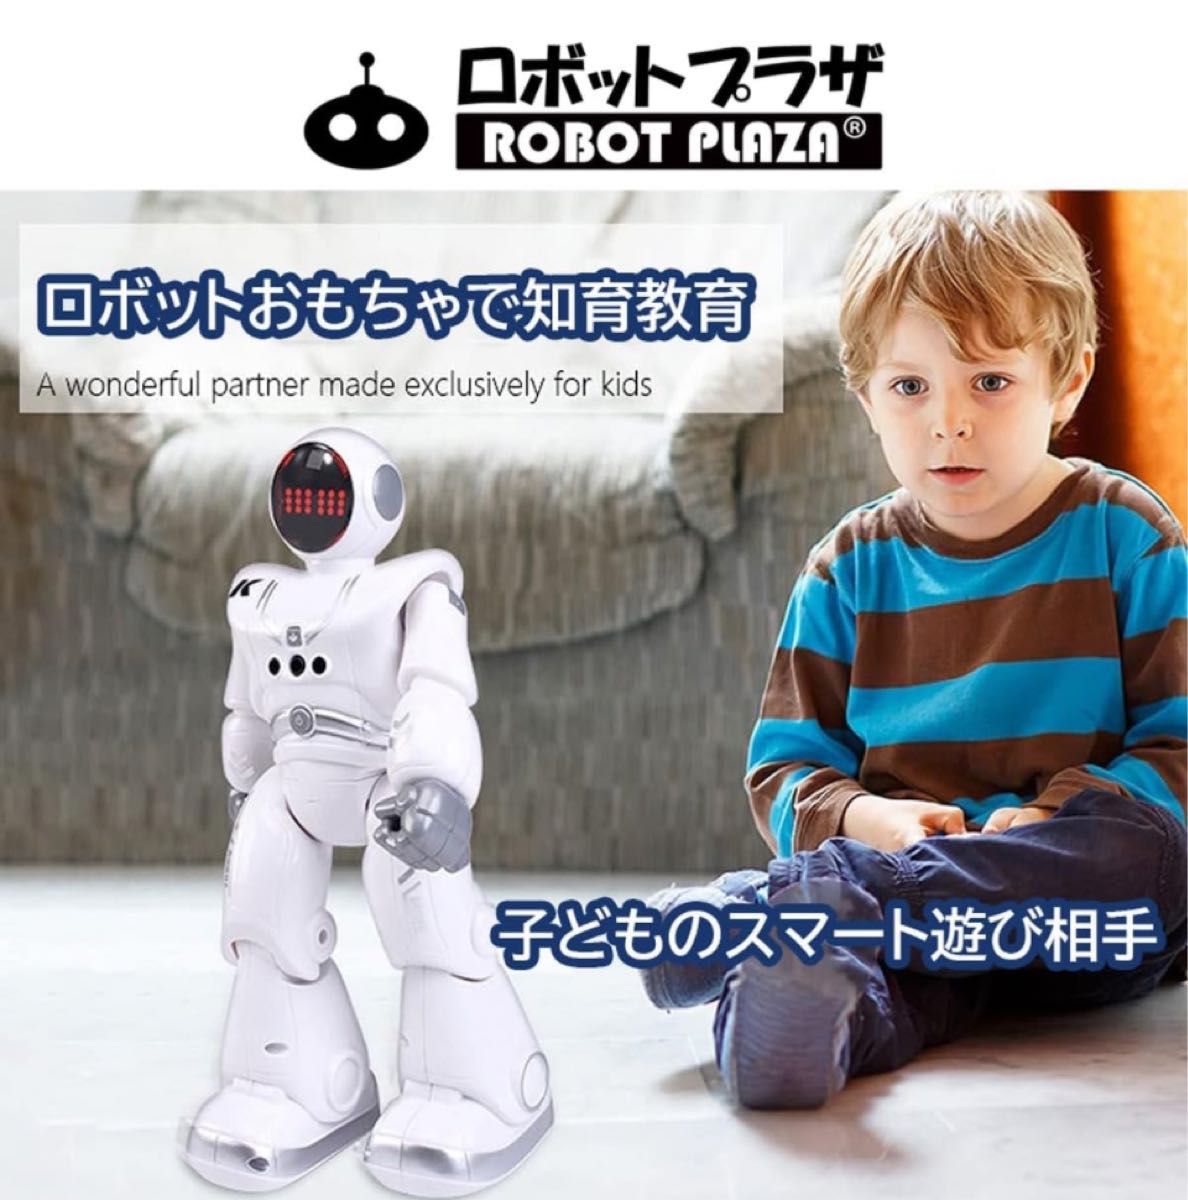 人型ロボット ロボット おもちゃ 歩く 英語おっしゃべり 子供 おもちゃ 男の子 誕生日プレゼント 知育玩具 充電式 日本語説明書